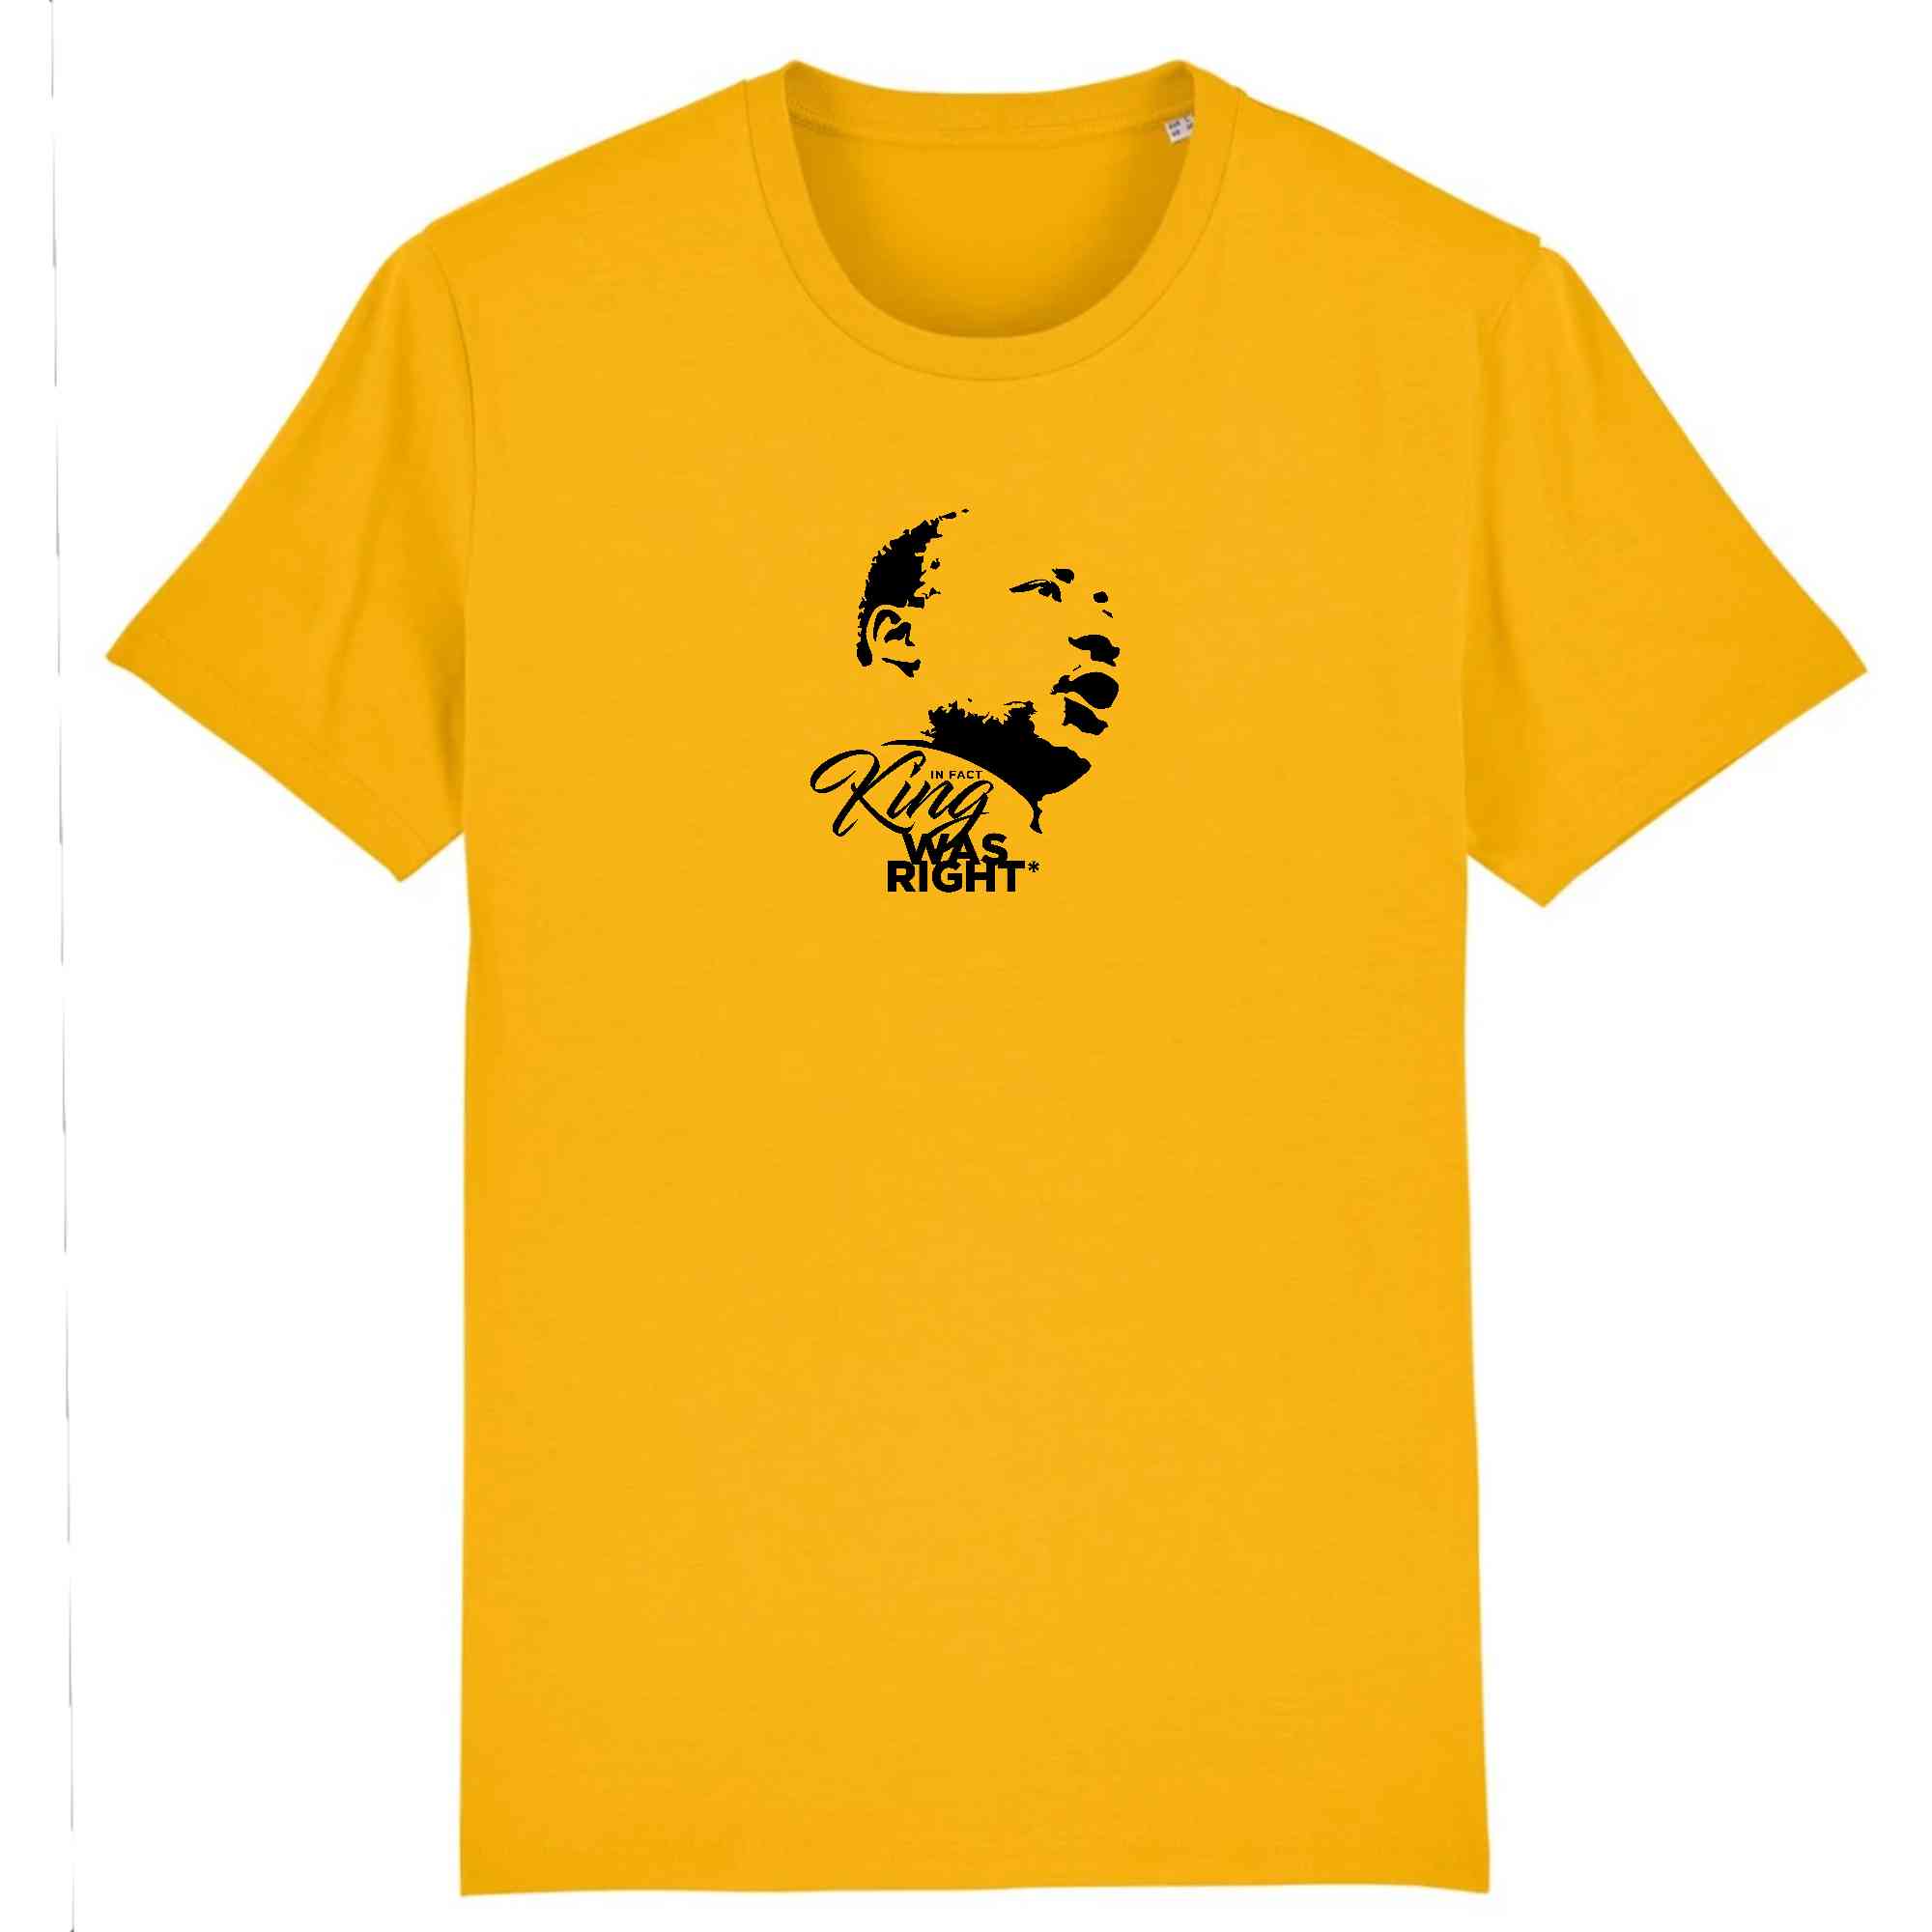 T-shirt jaune et noir en coton bio King WAS RIGHT - Tshirt martin luther king en plusieurs couleurs